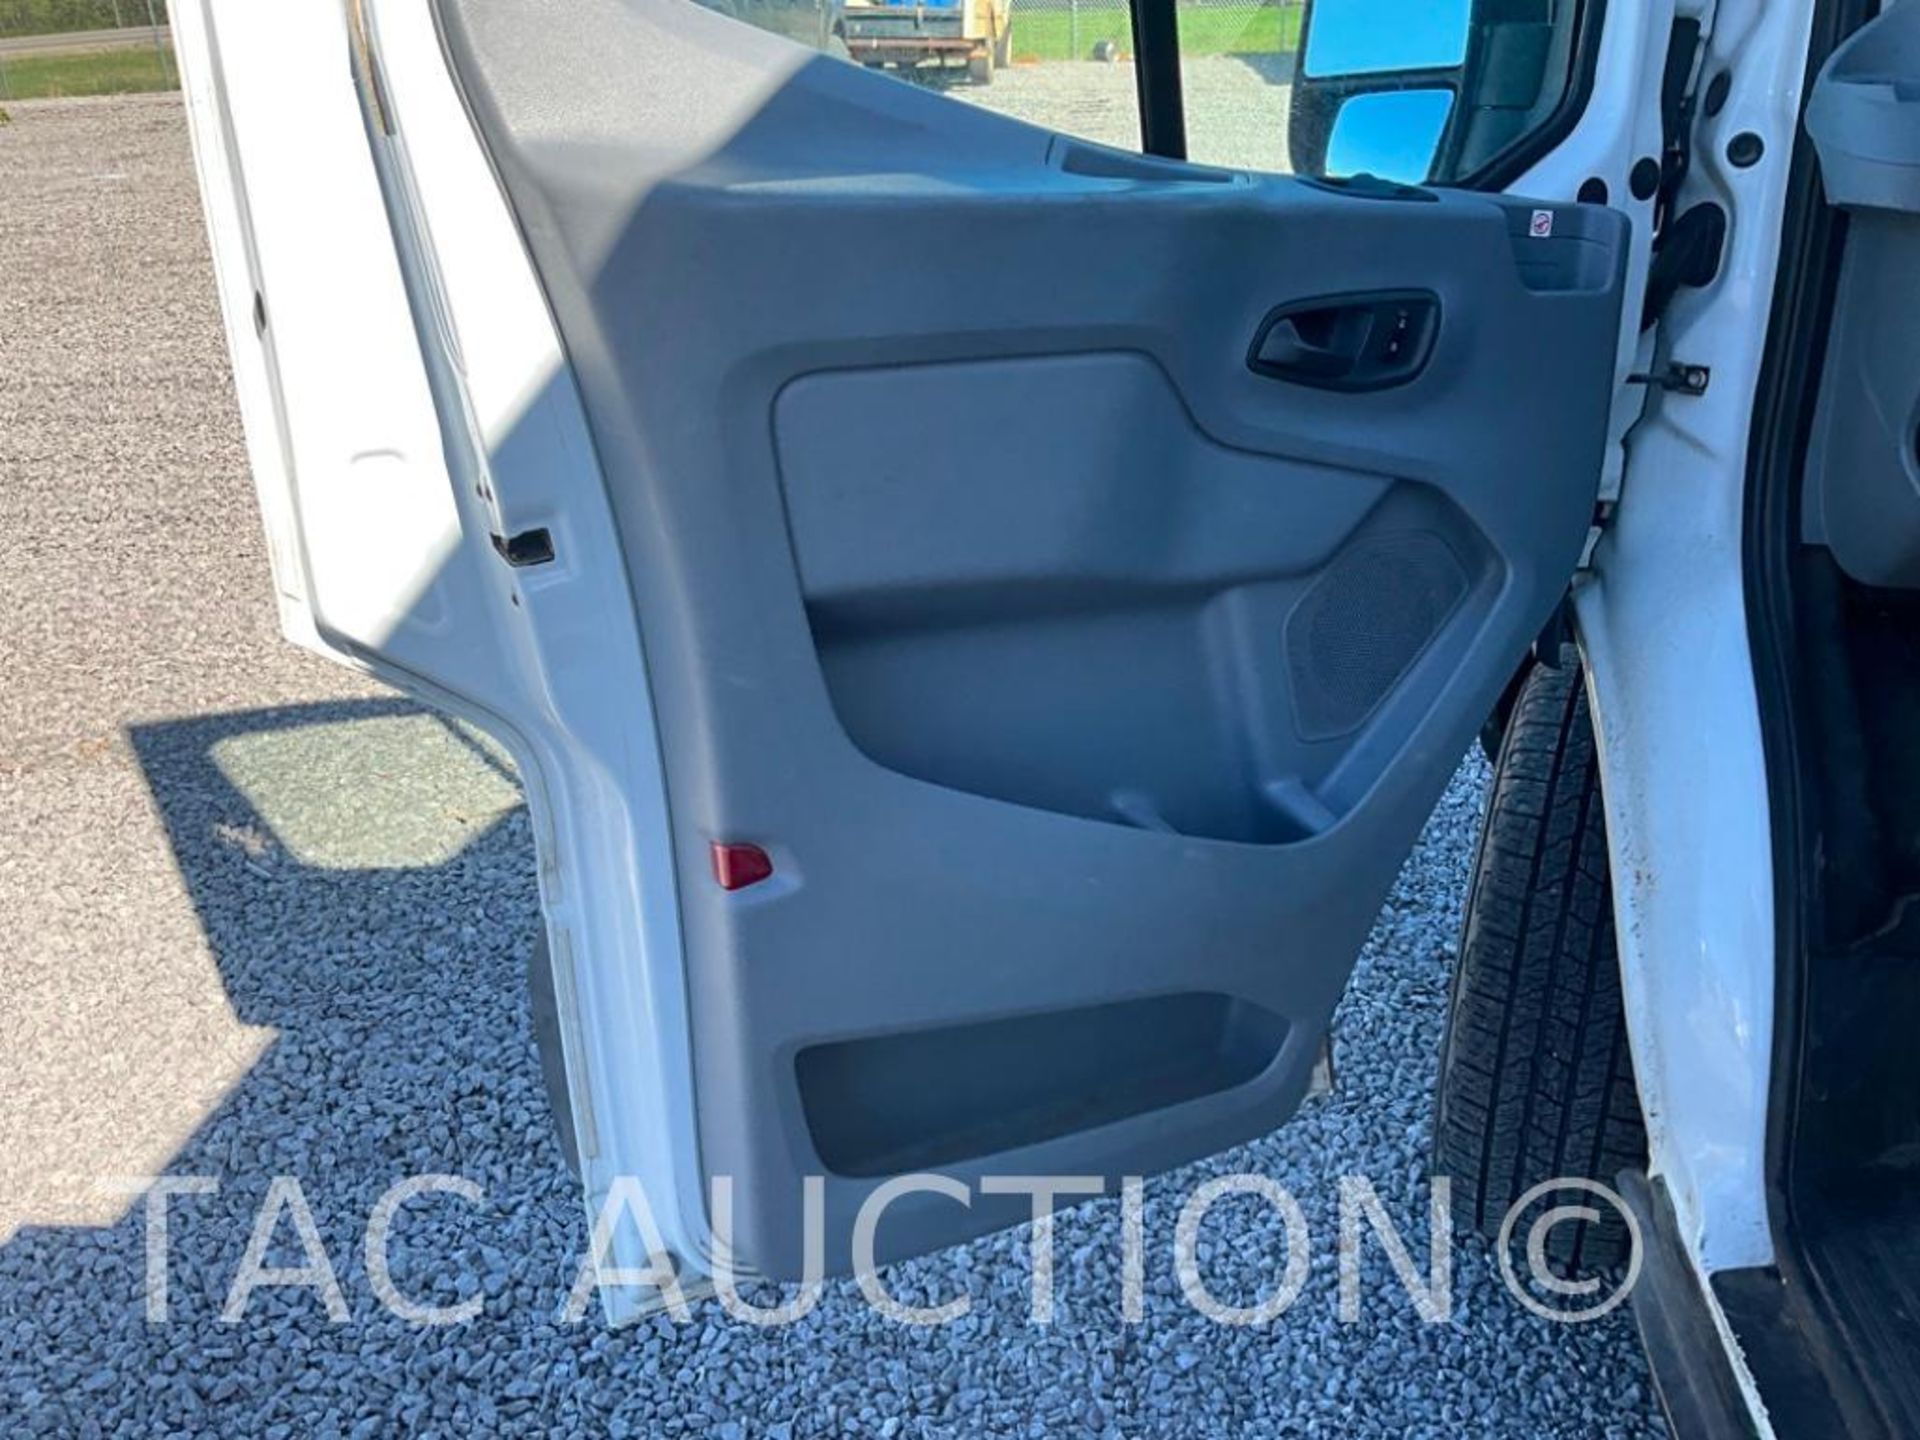 2019 Ford Transit 150 Cargo Van - Image 9 of 52